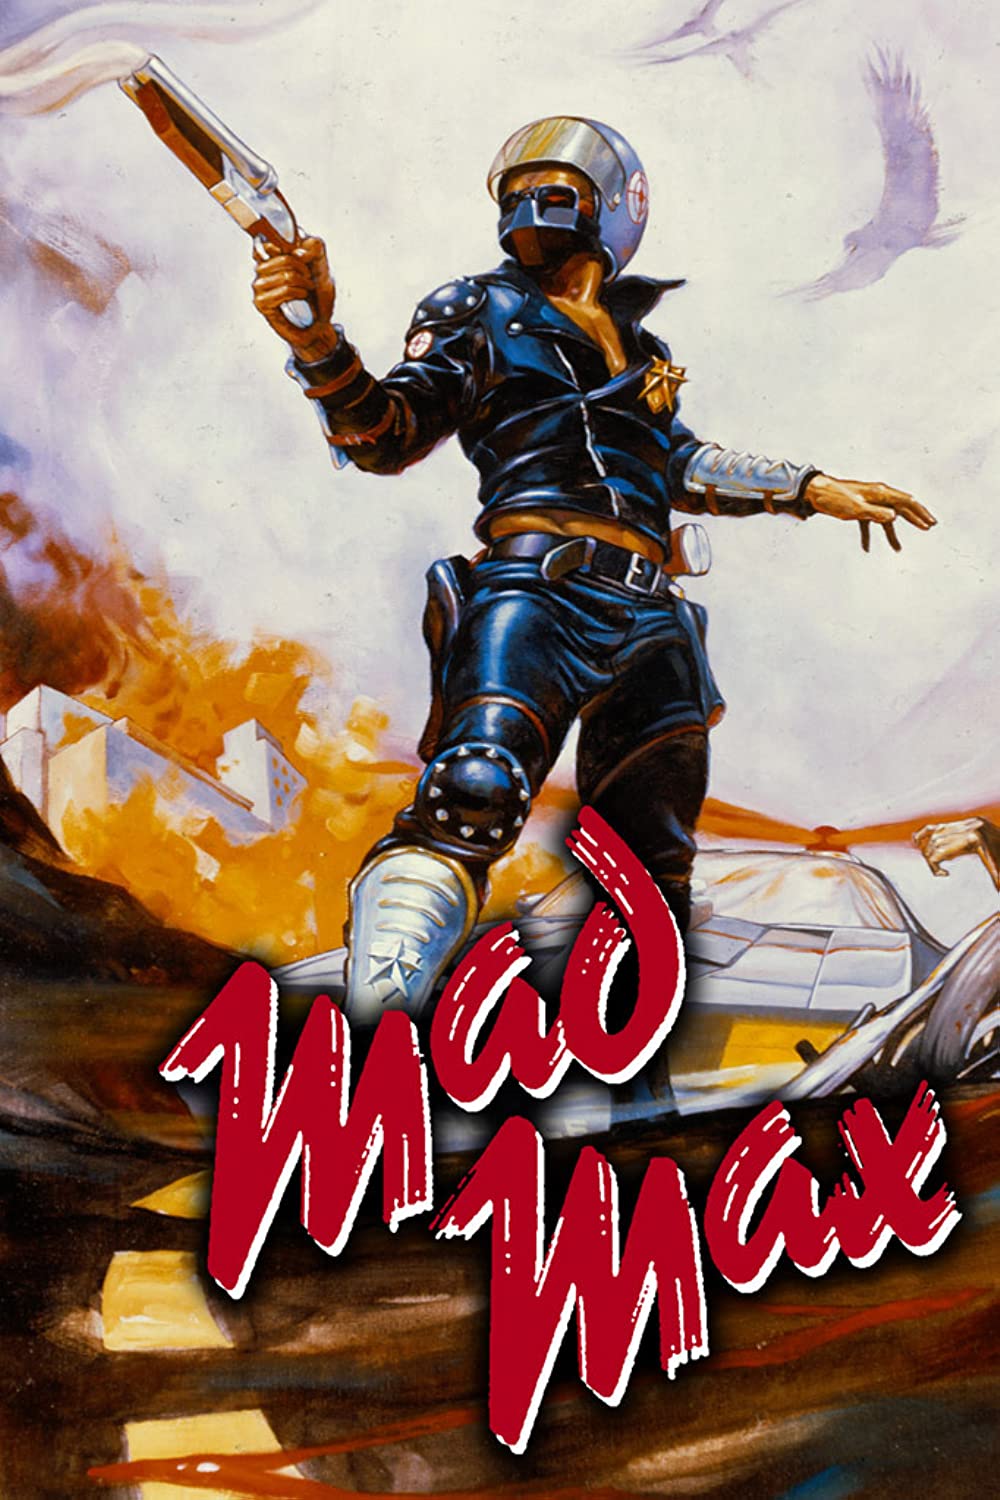 Filmbeschreibung zu Mad Max (1979)